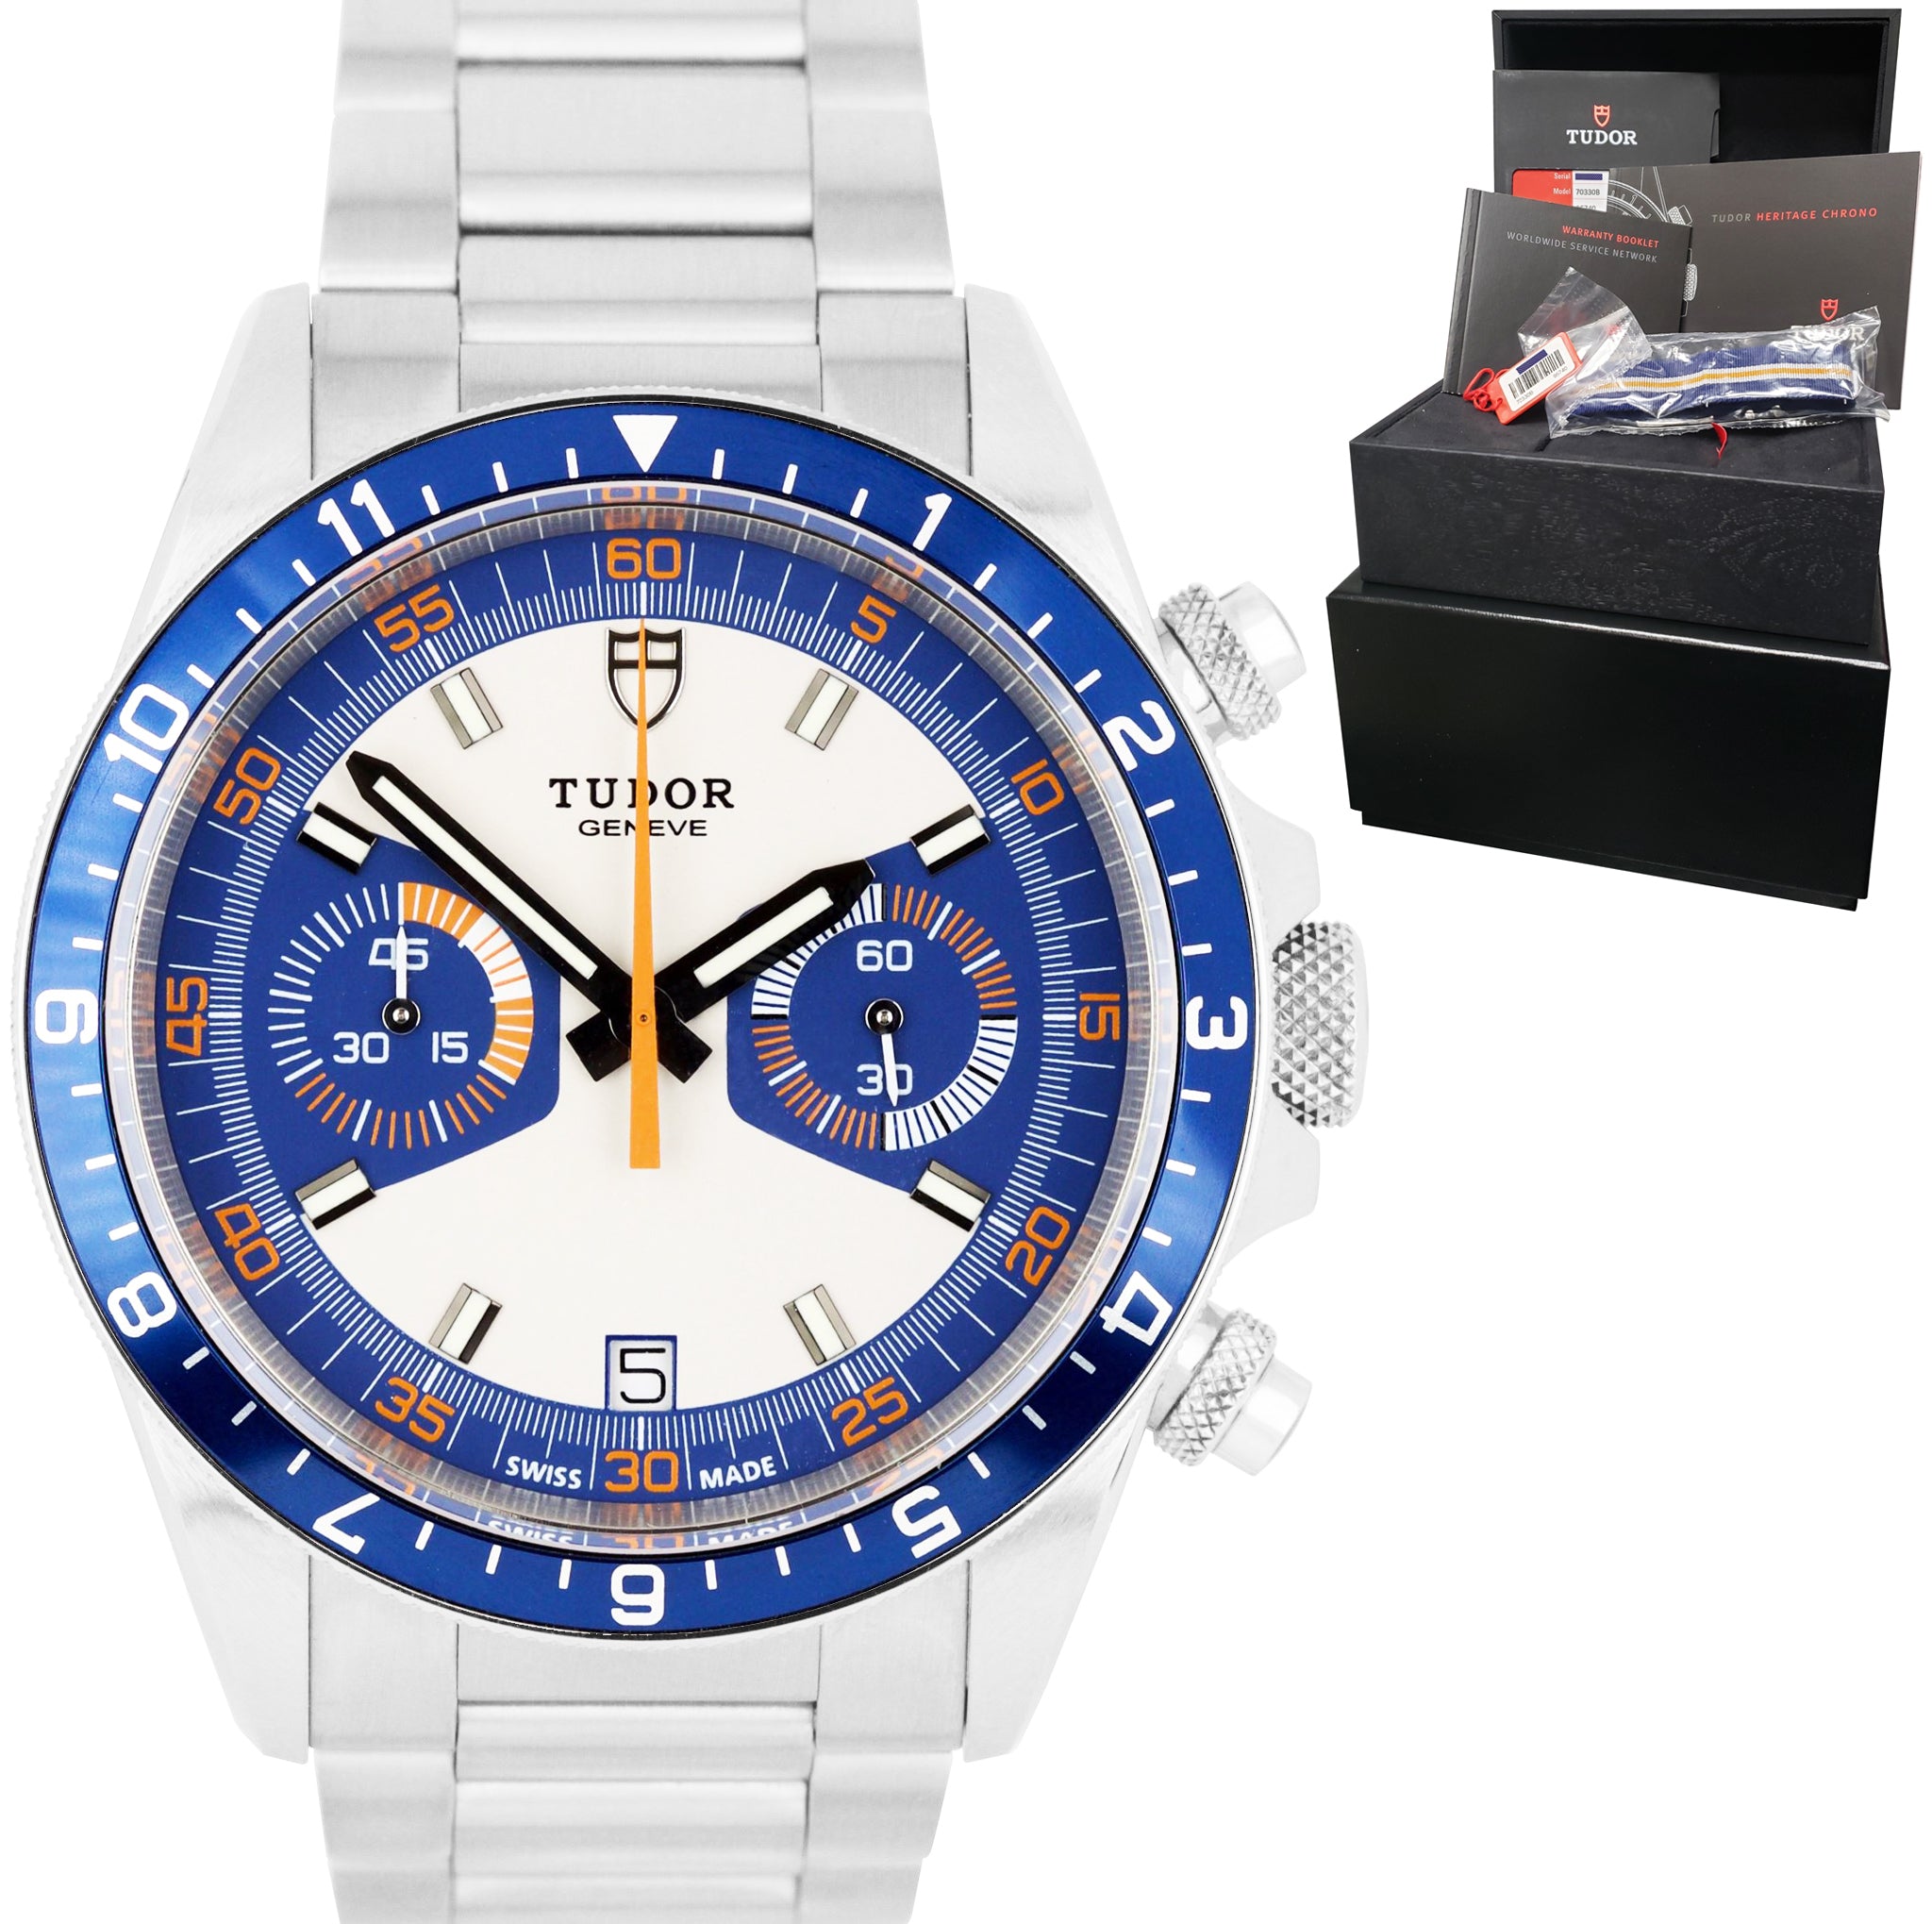 2020 UNPOLISHED Tudor Heritage Chrono 42 BLUE Chronograph Watch 70330 B FULL SET